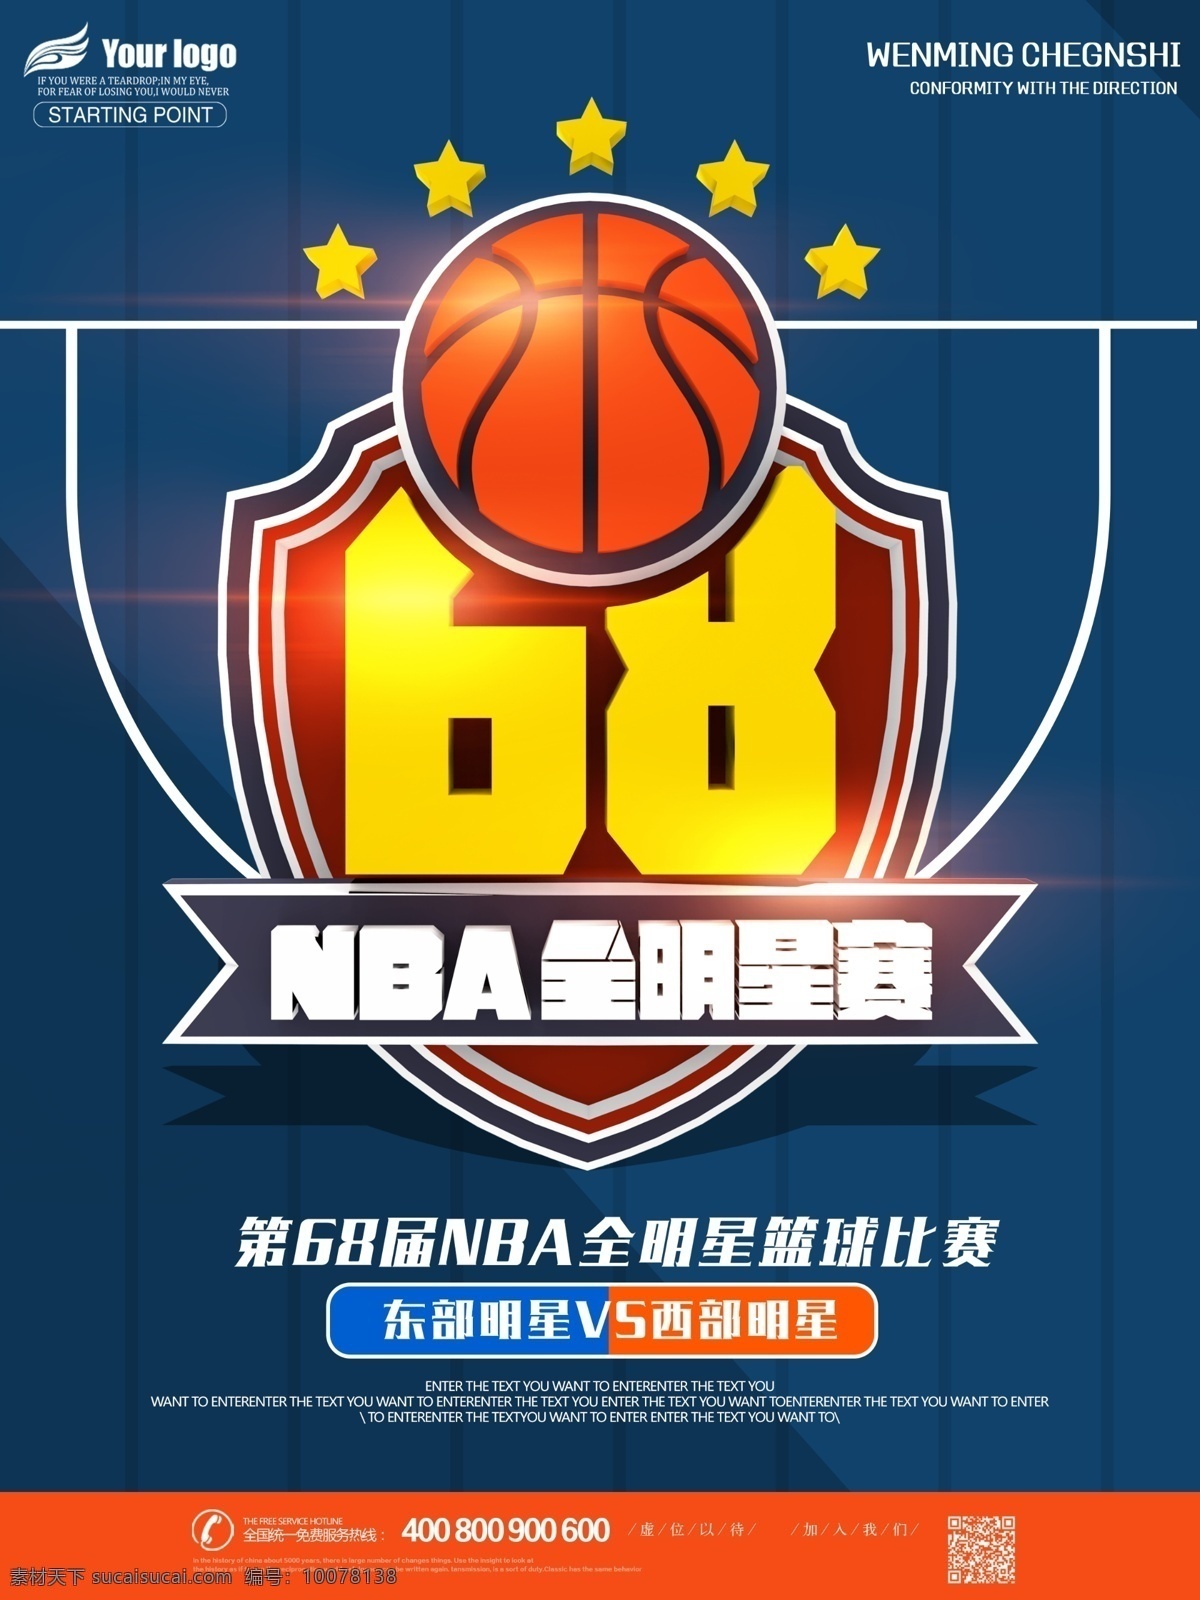 届 nba 全 明星 比赛 宣传海报 篮球比赛 全明星比赛 篮球比赛海报 篮球 培训 招生 宣传 美职篮 海报